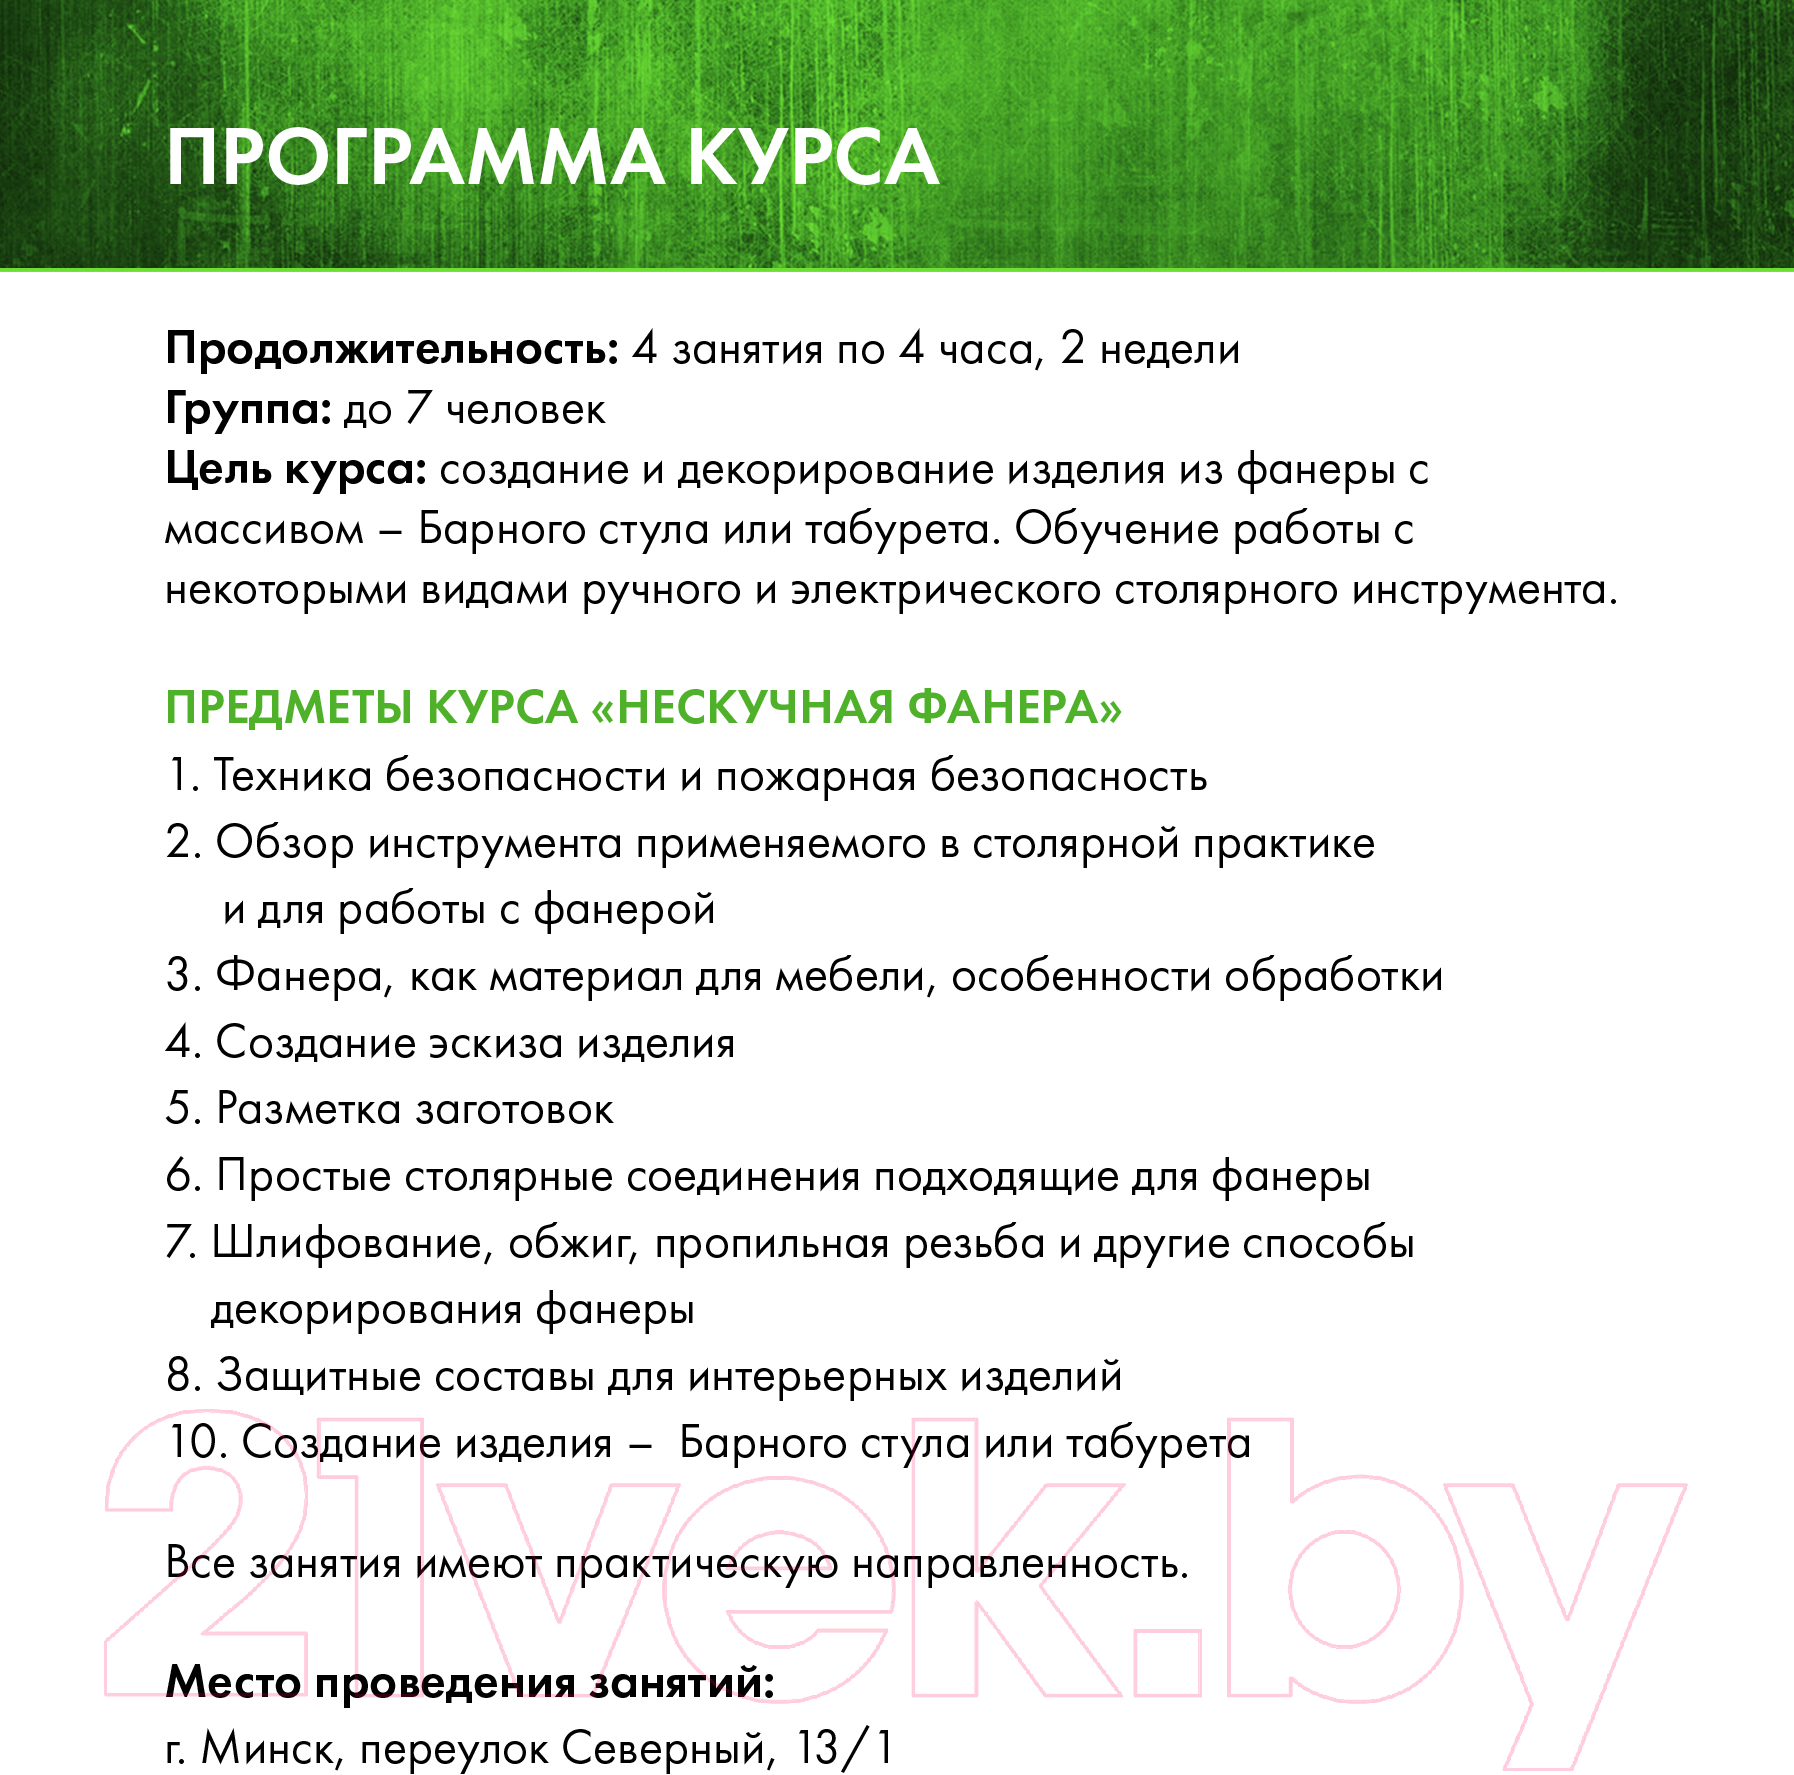 Сертификат на столярные курсы izDereva.by Нескучная фанера